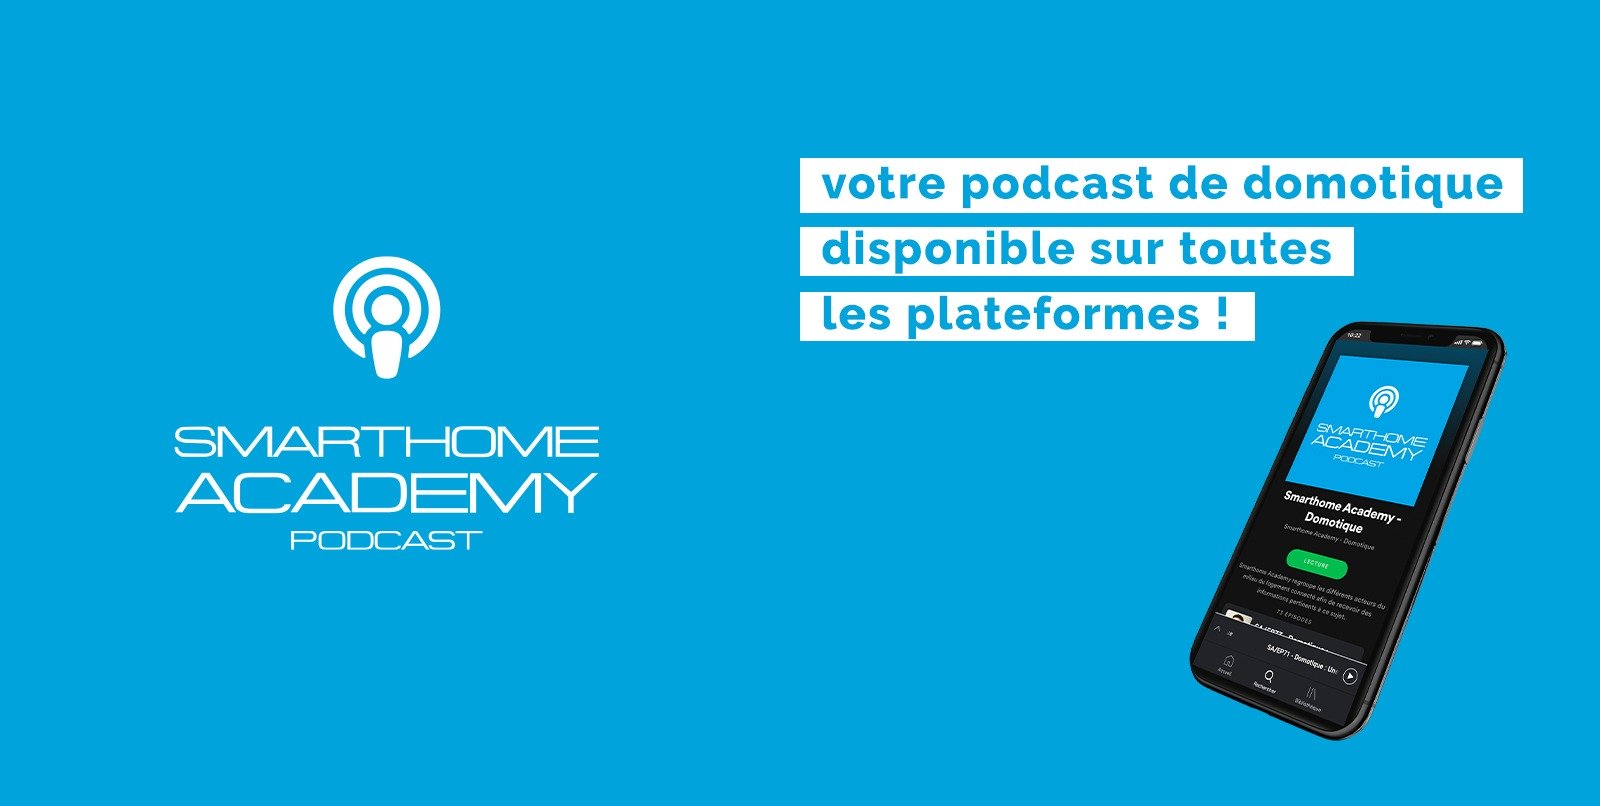 Écoutez votre podcast domotique Smarthome Academy partout !